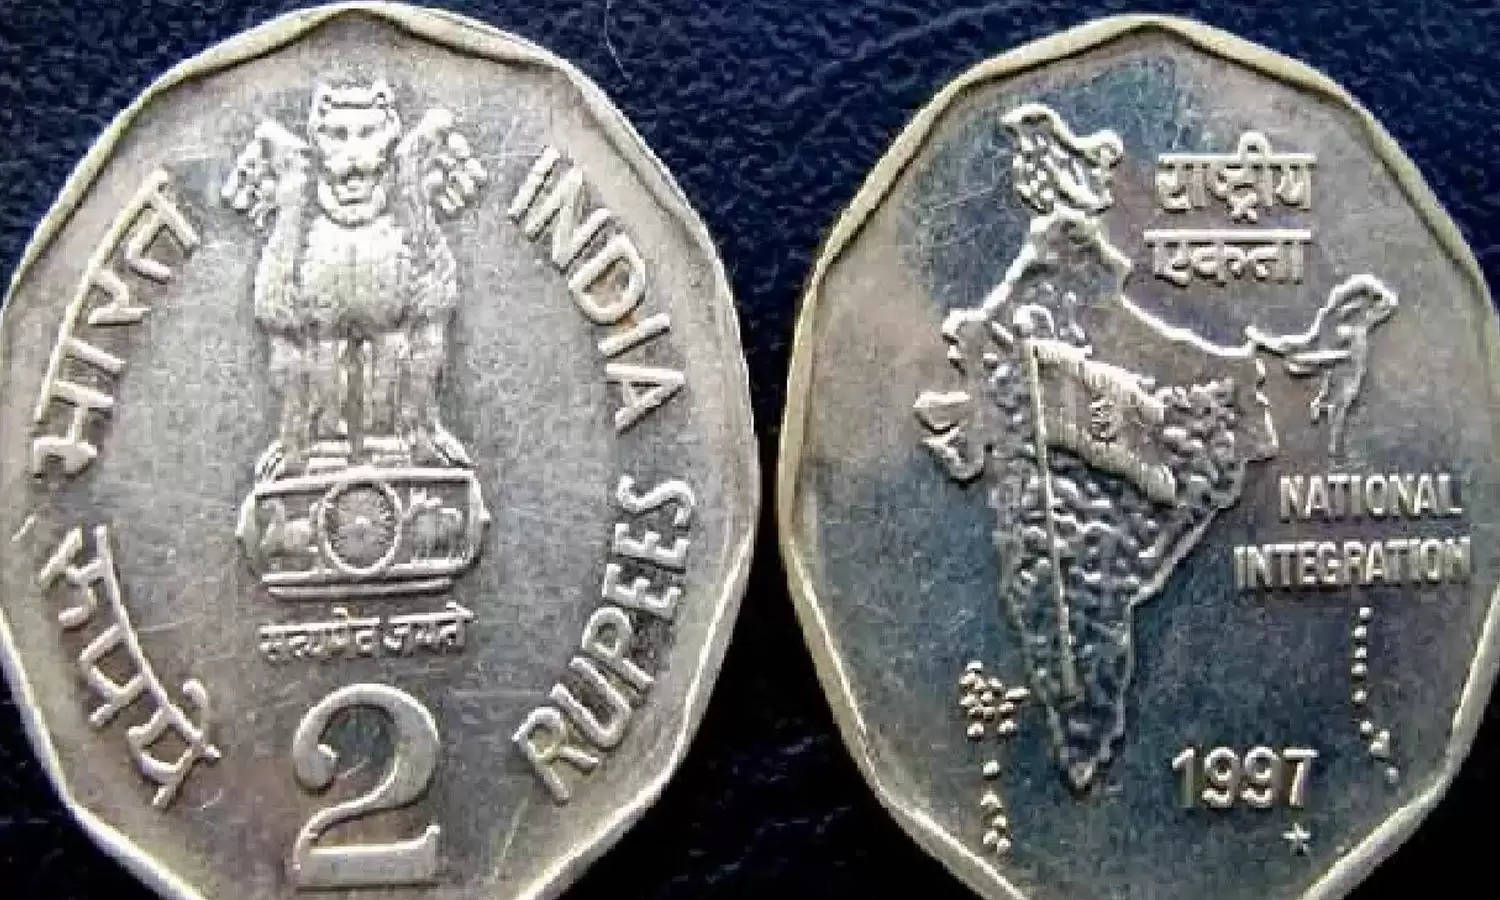 Sell old Coin: सिर्फ 2 रूपए का ये सिक्का घर बैठे दिलाएगा 5 लाख, जानिए कैसे